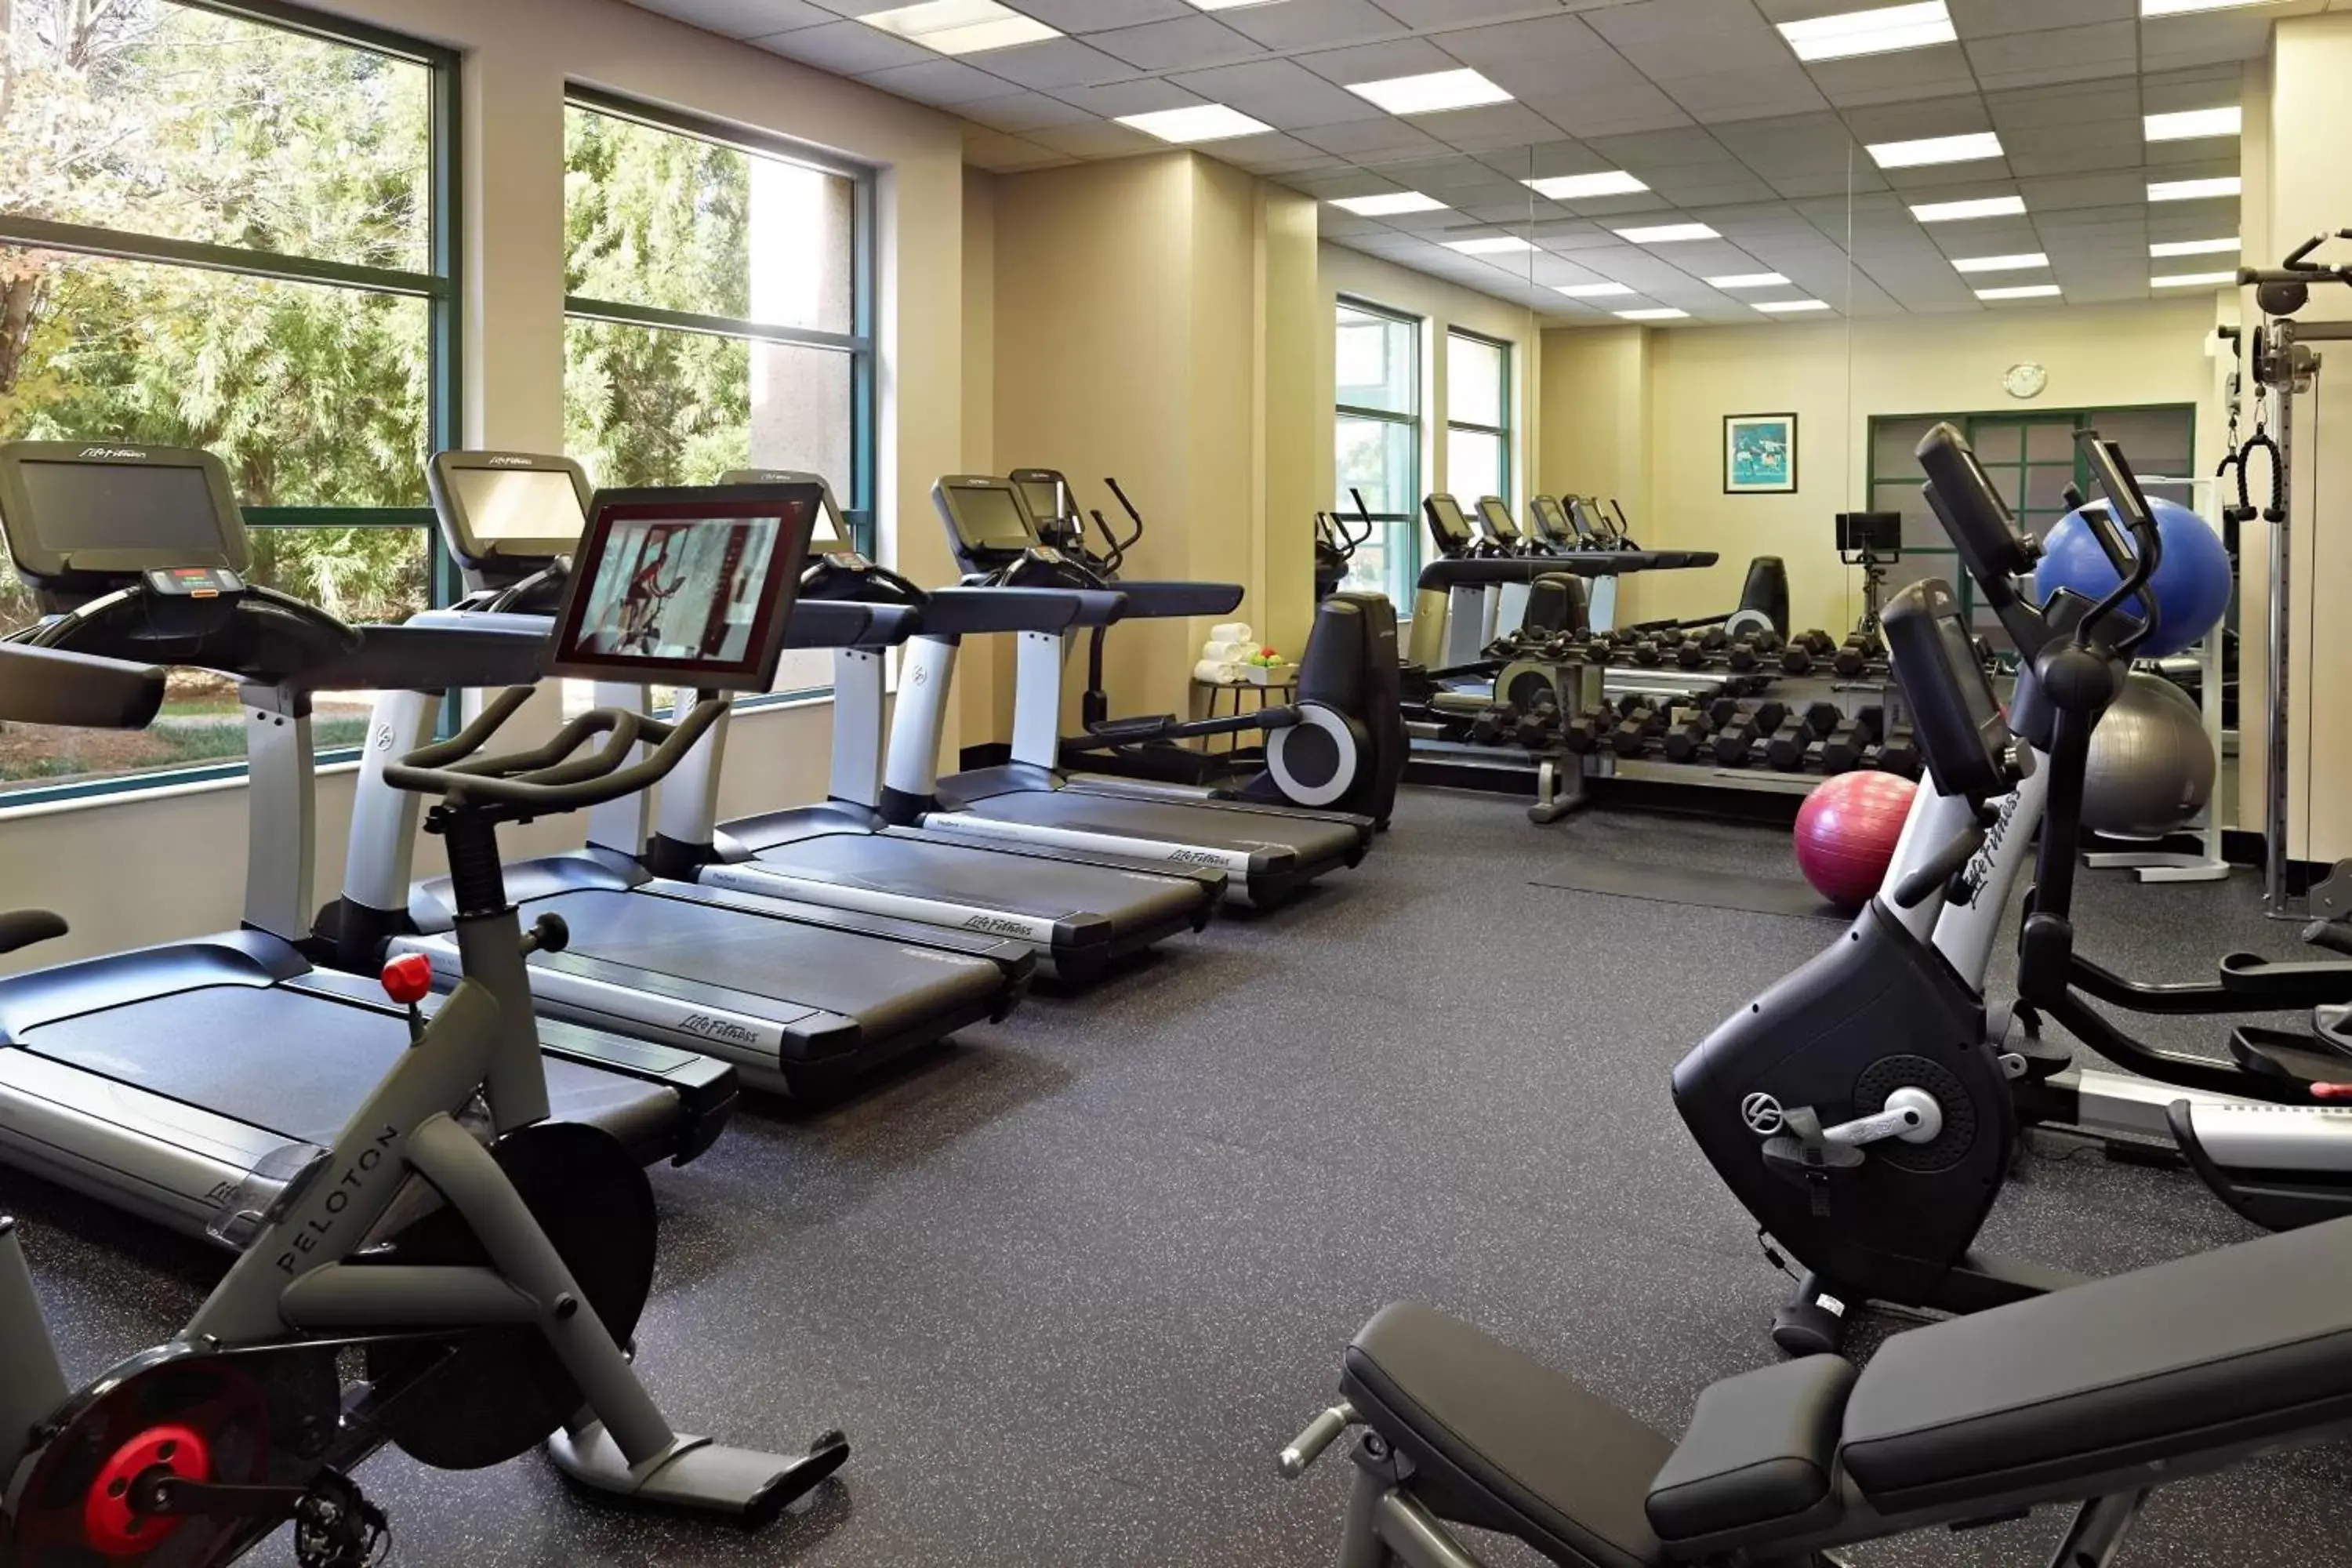 Fitness centre/facilities, Fitness Center/Facilities in Atlanta Marriott Alpharetta